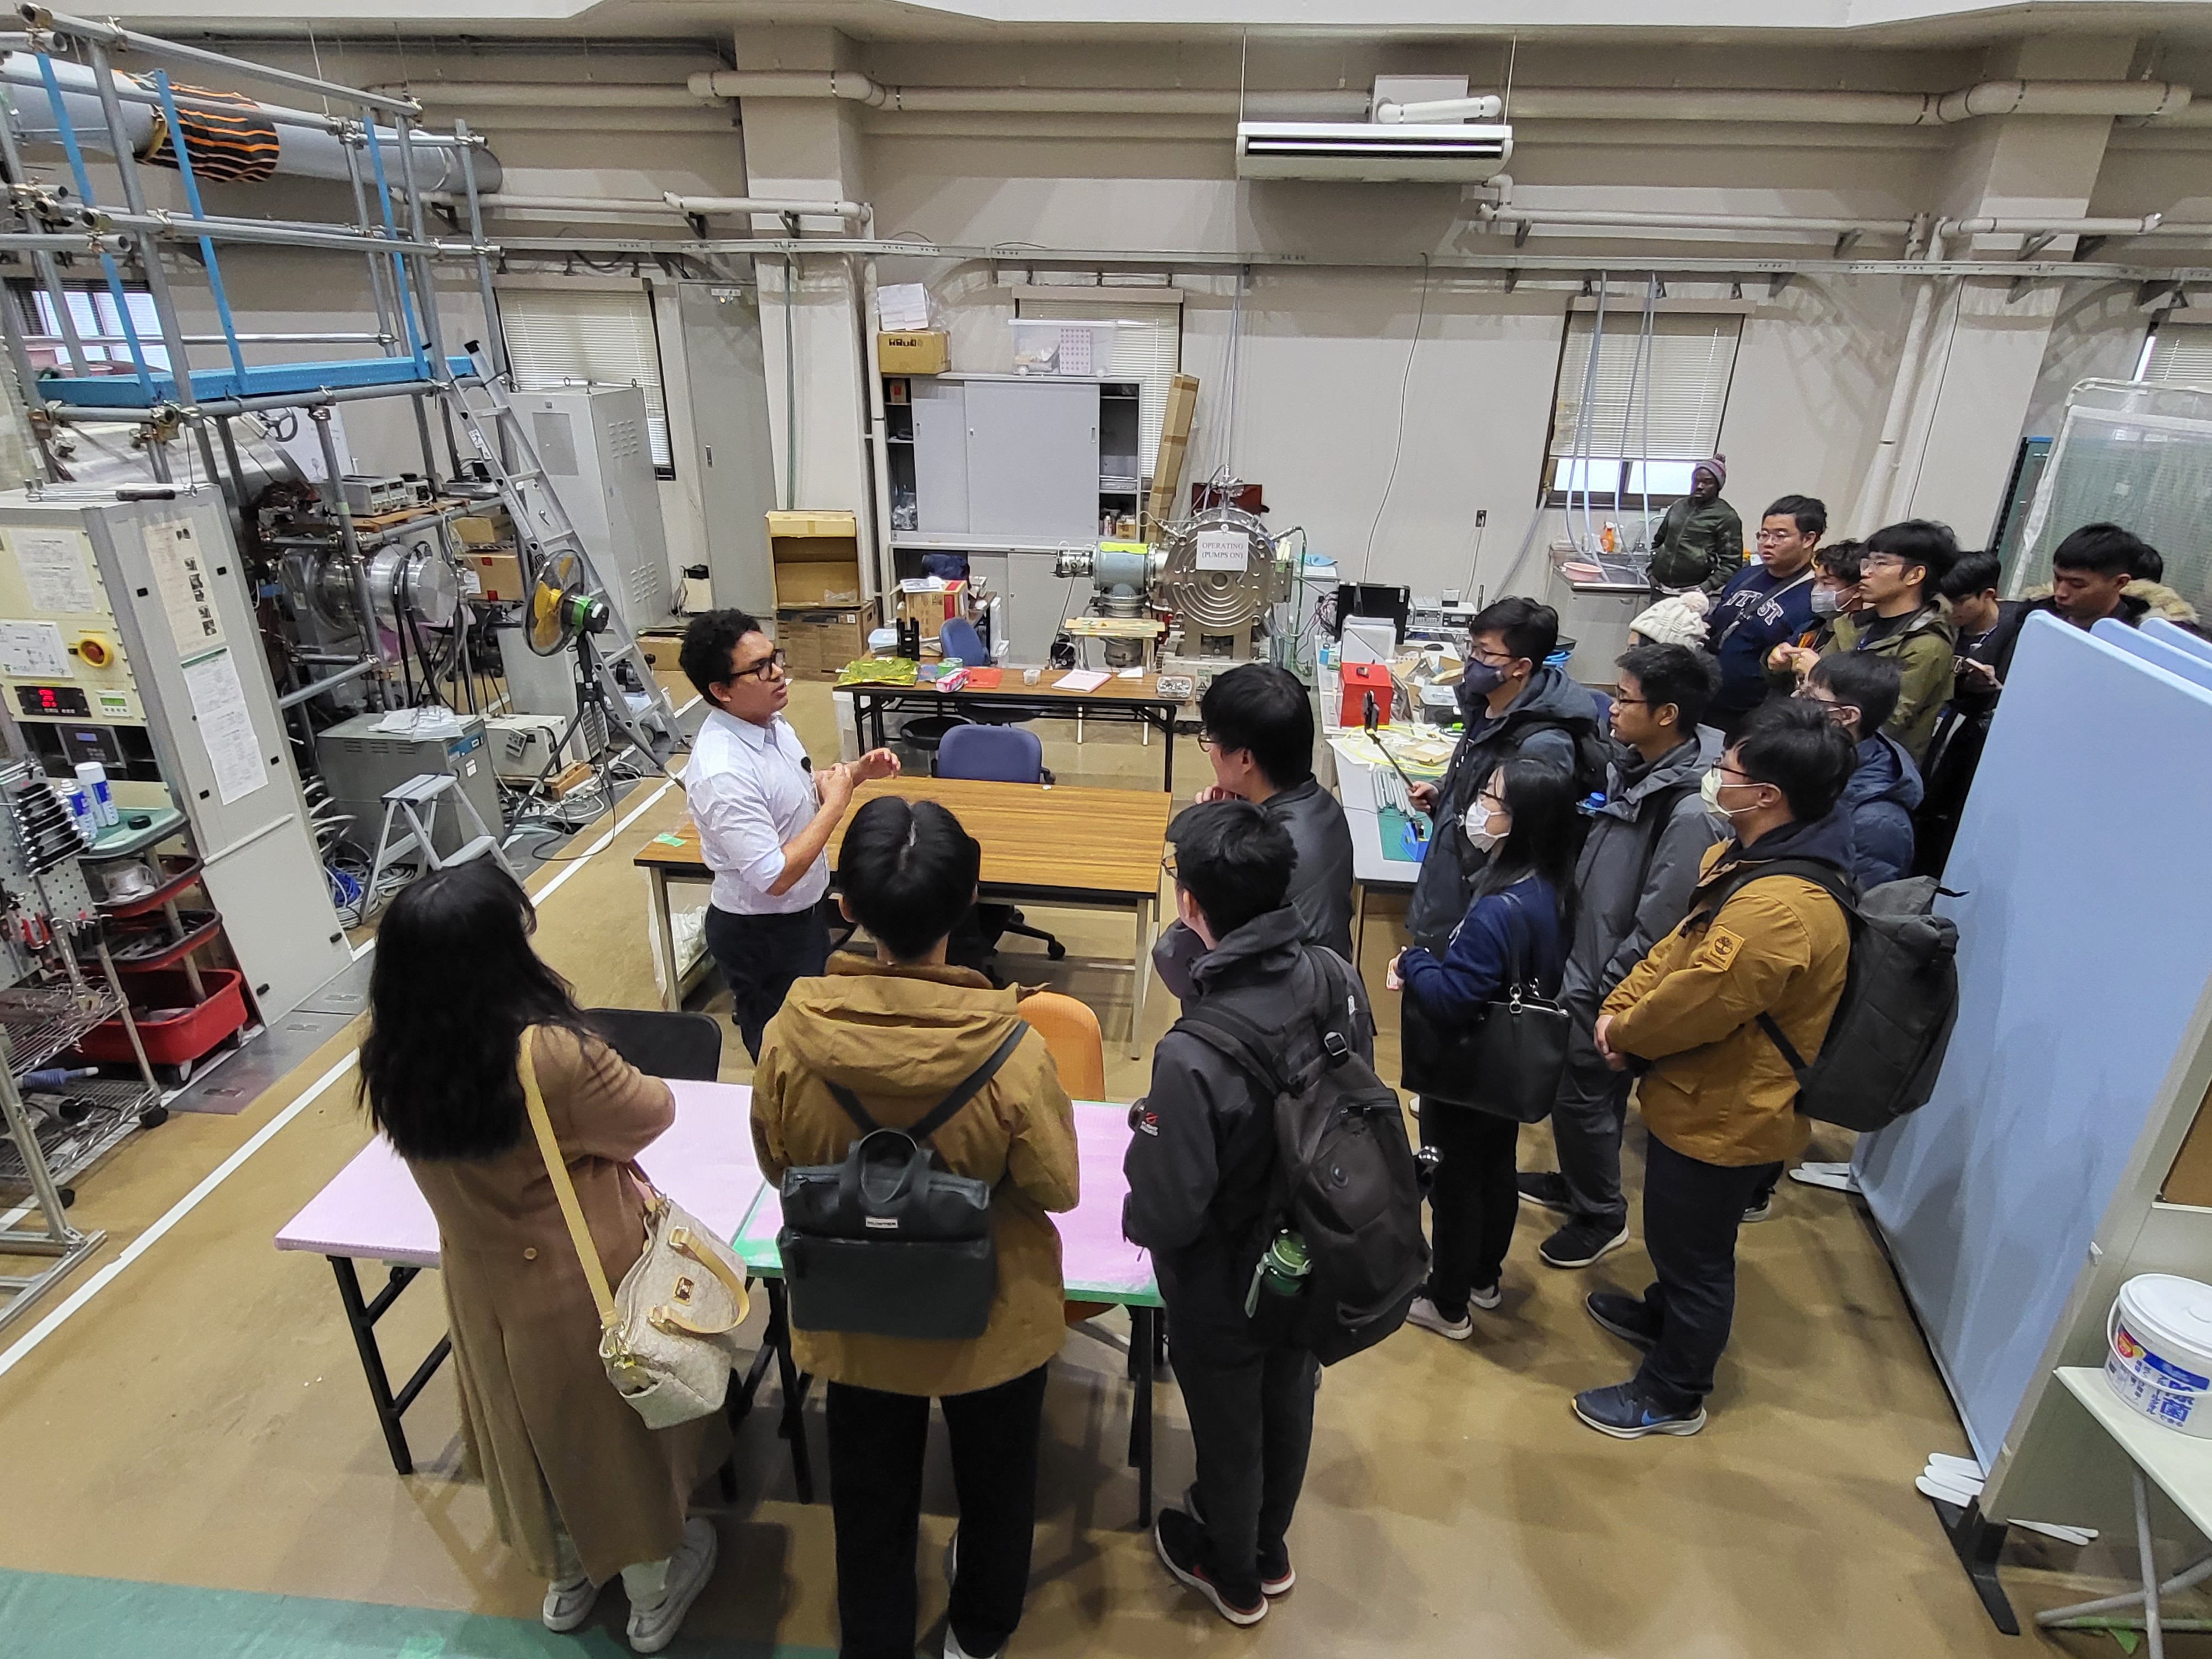 臺科大學生參訪九州工業大學超小型衛星實驗室。